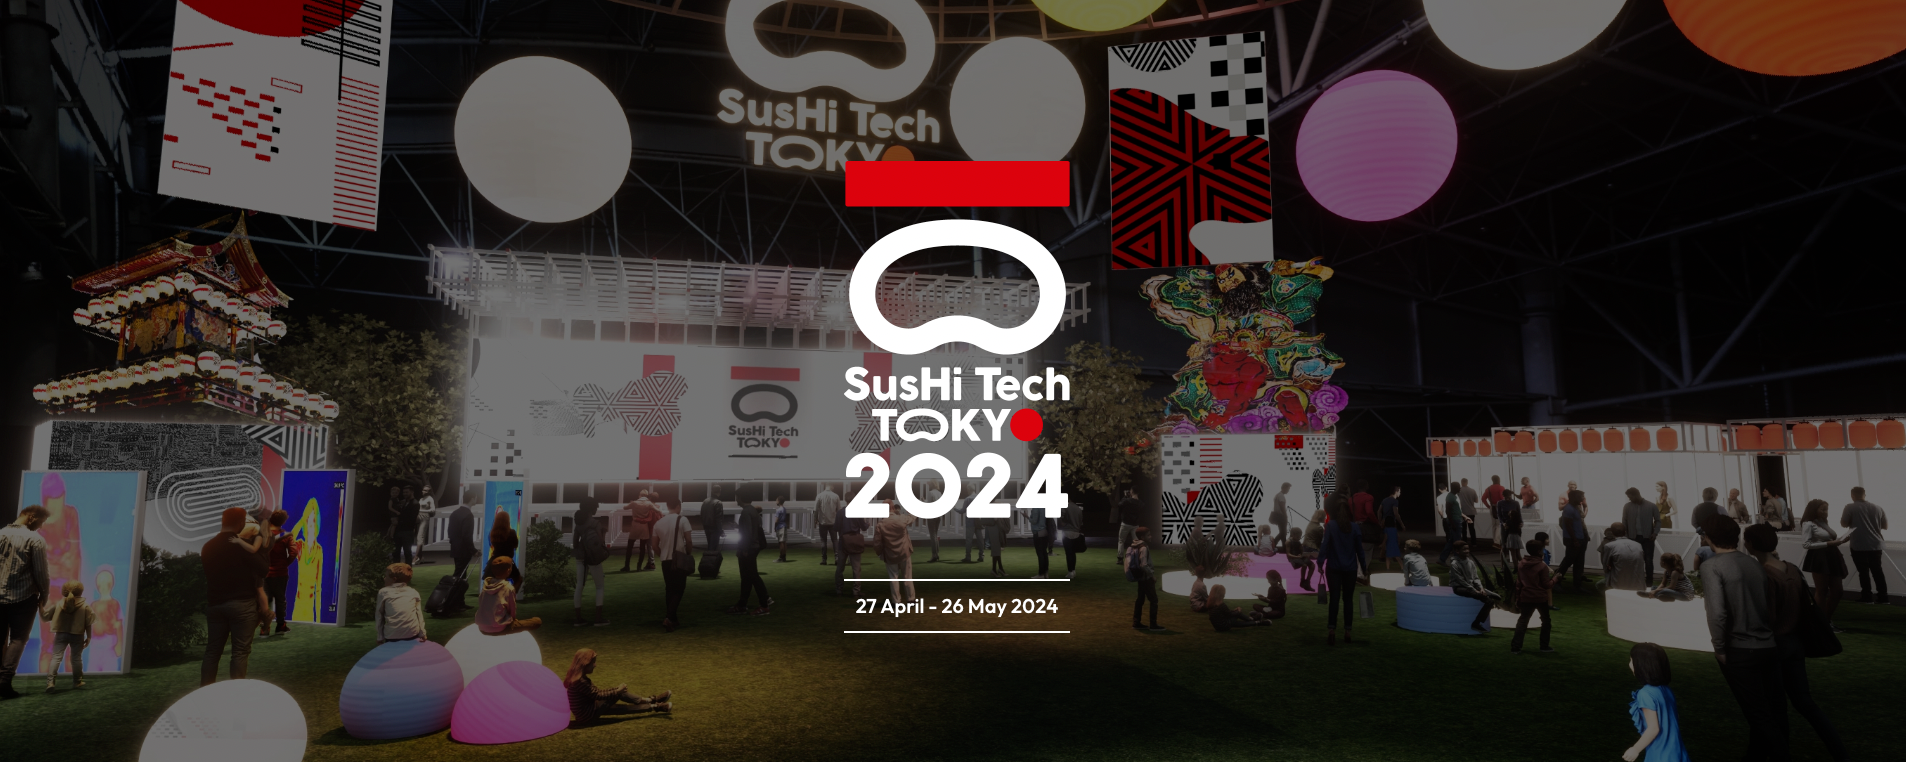 2024N4-5JÁuSusHi Tech Tokyo 2024 V[P[XvOvɋZpp[gi[ƂƂĎQ